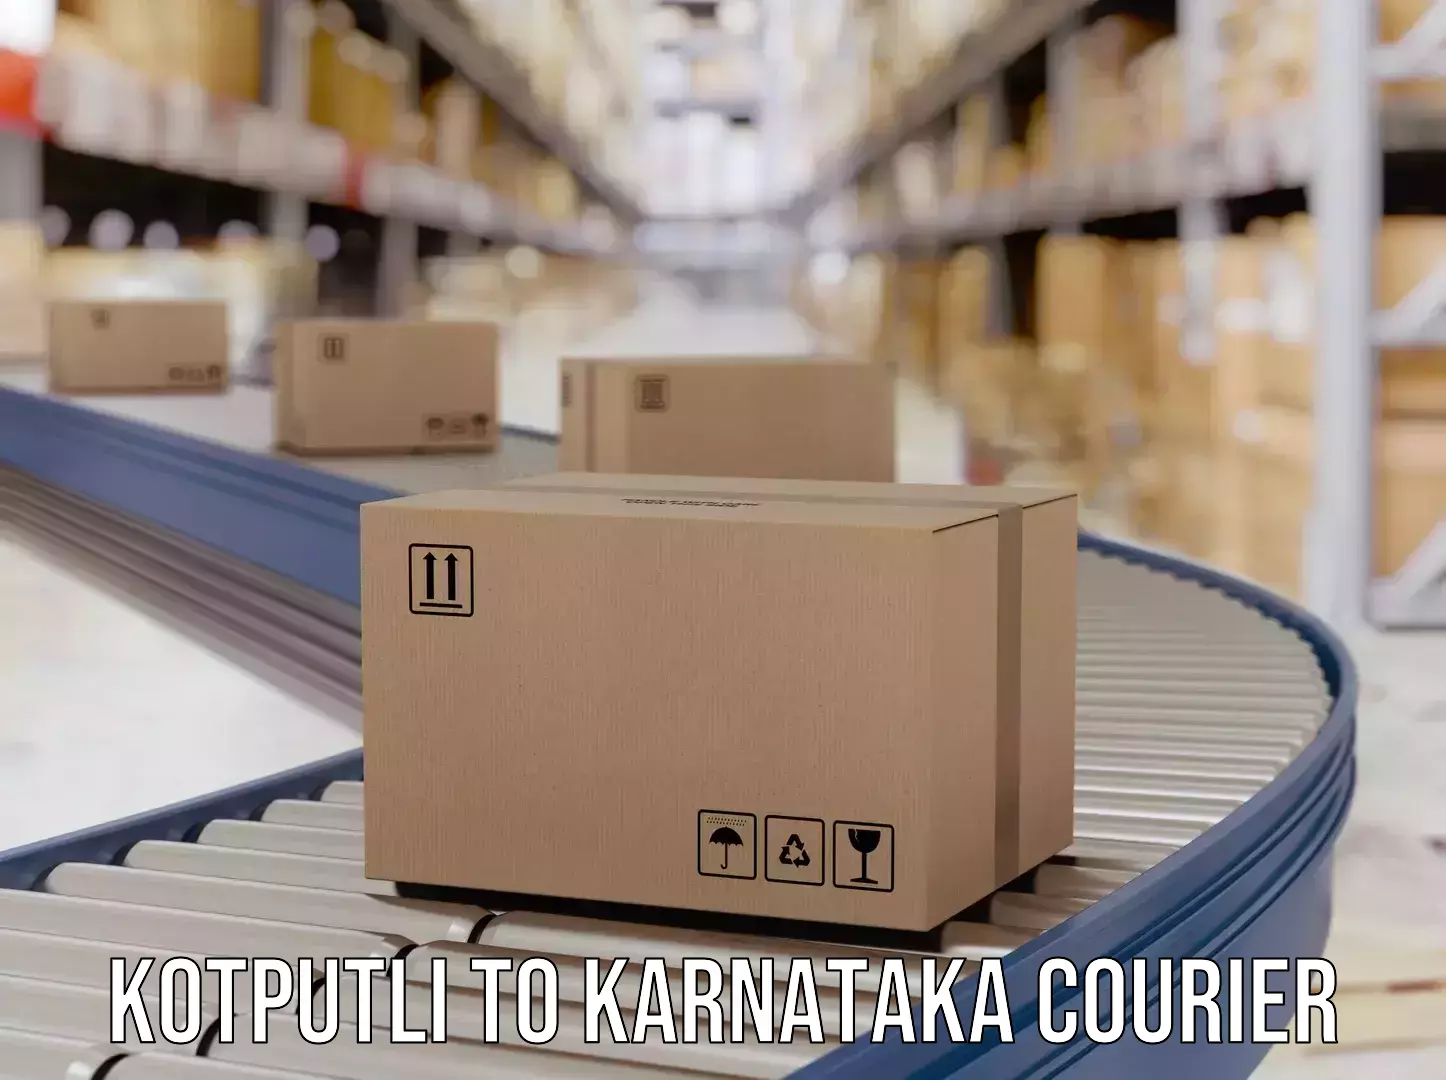 Customer-centric shipping Kotputli to Byadagi